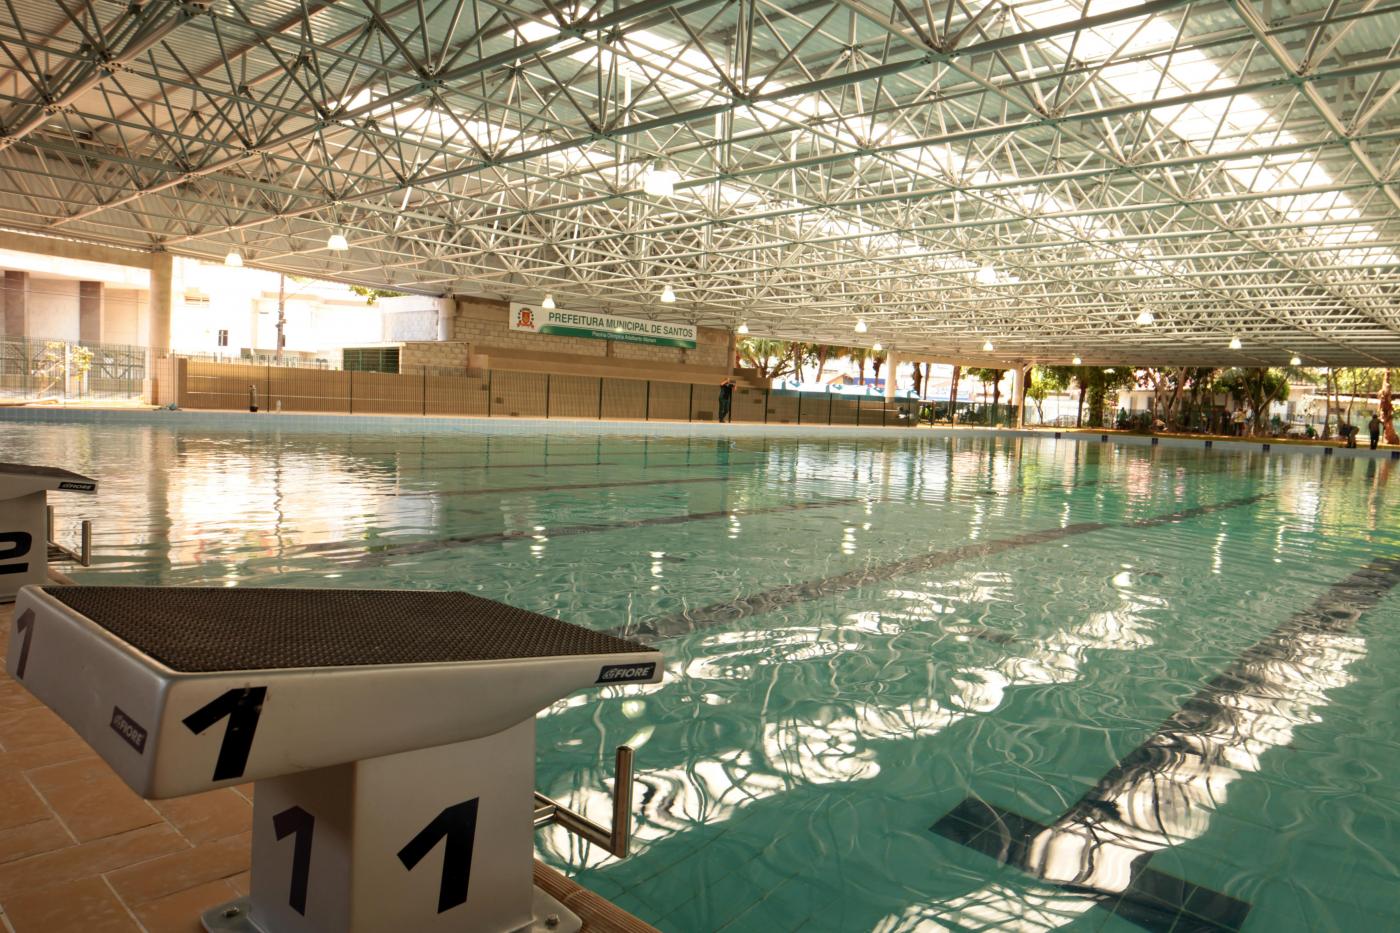 Piscina olimpica cheia d'água. Em primeiro plano os locais para salto dos atletas. #Pracegover